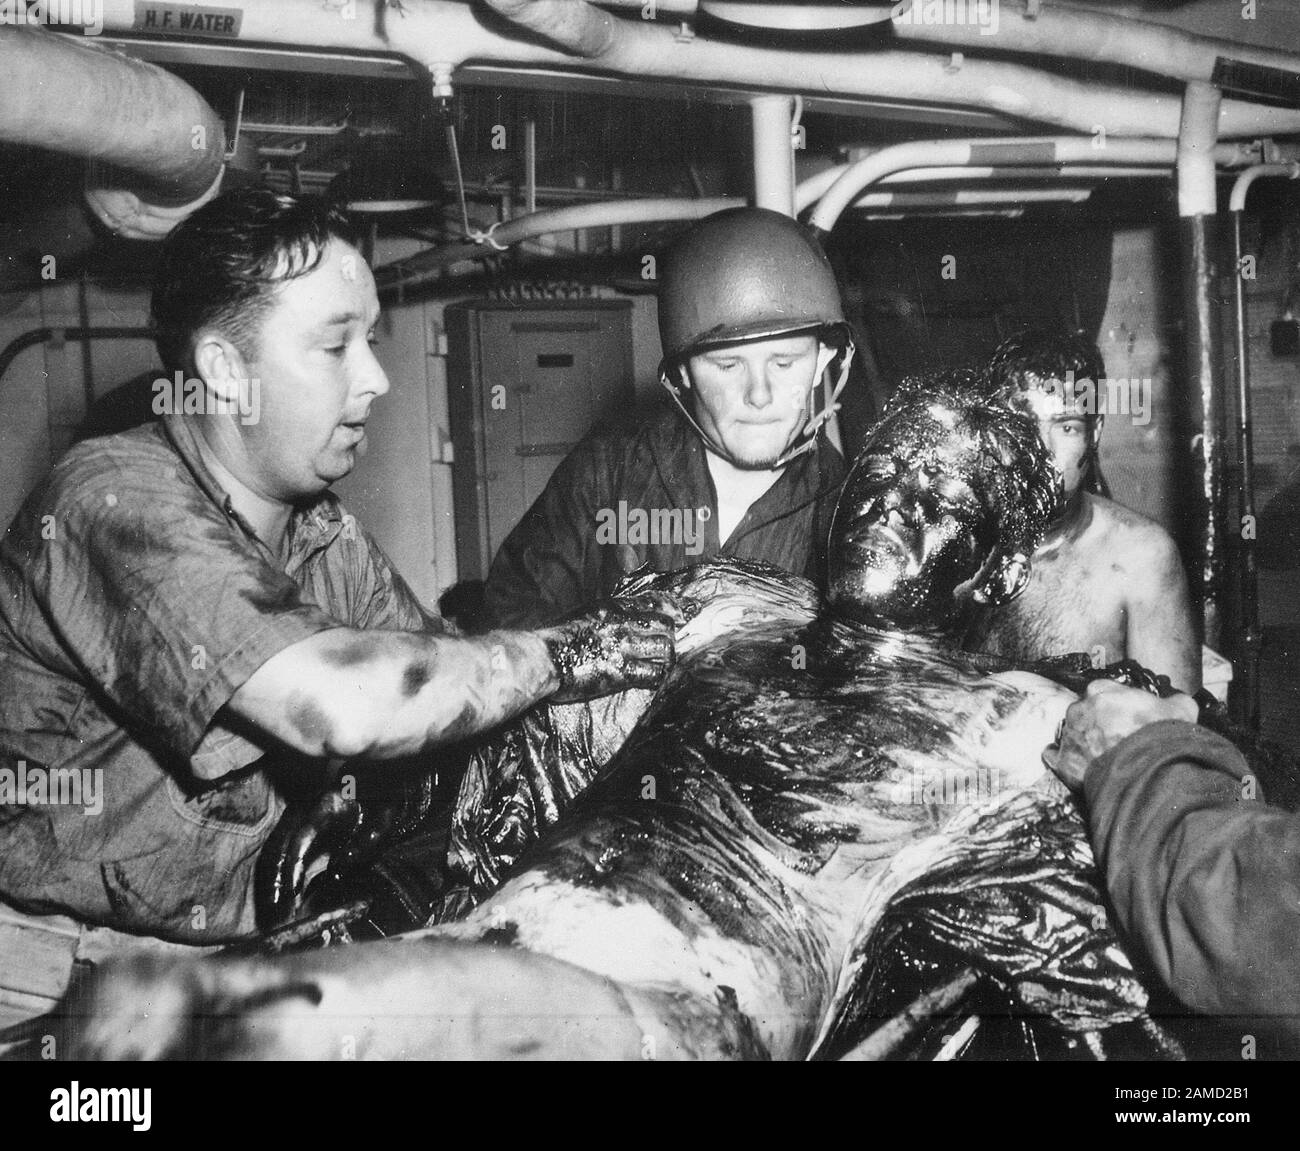 I marinai della marina statunitense si rilassano mentre i due guardsmen della costa raschiano un rivestimento spesso di olio dal suo corpo. La nave sopravvissuta, la USS LANSDALE, fu affondata da aerei nazisti al largo della costa del Nord Africa. Aprile 1944 Foto Stock